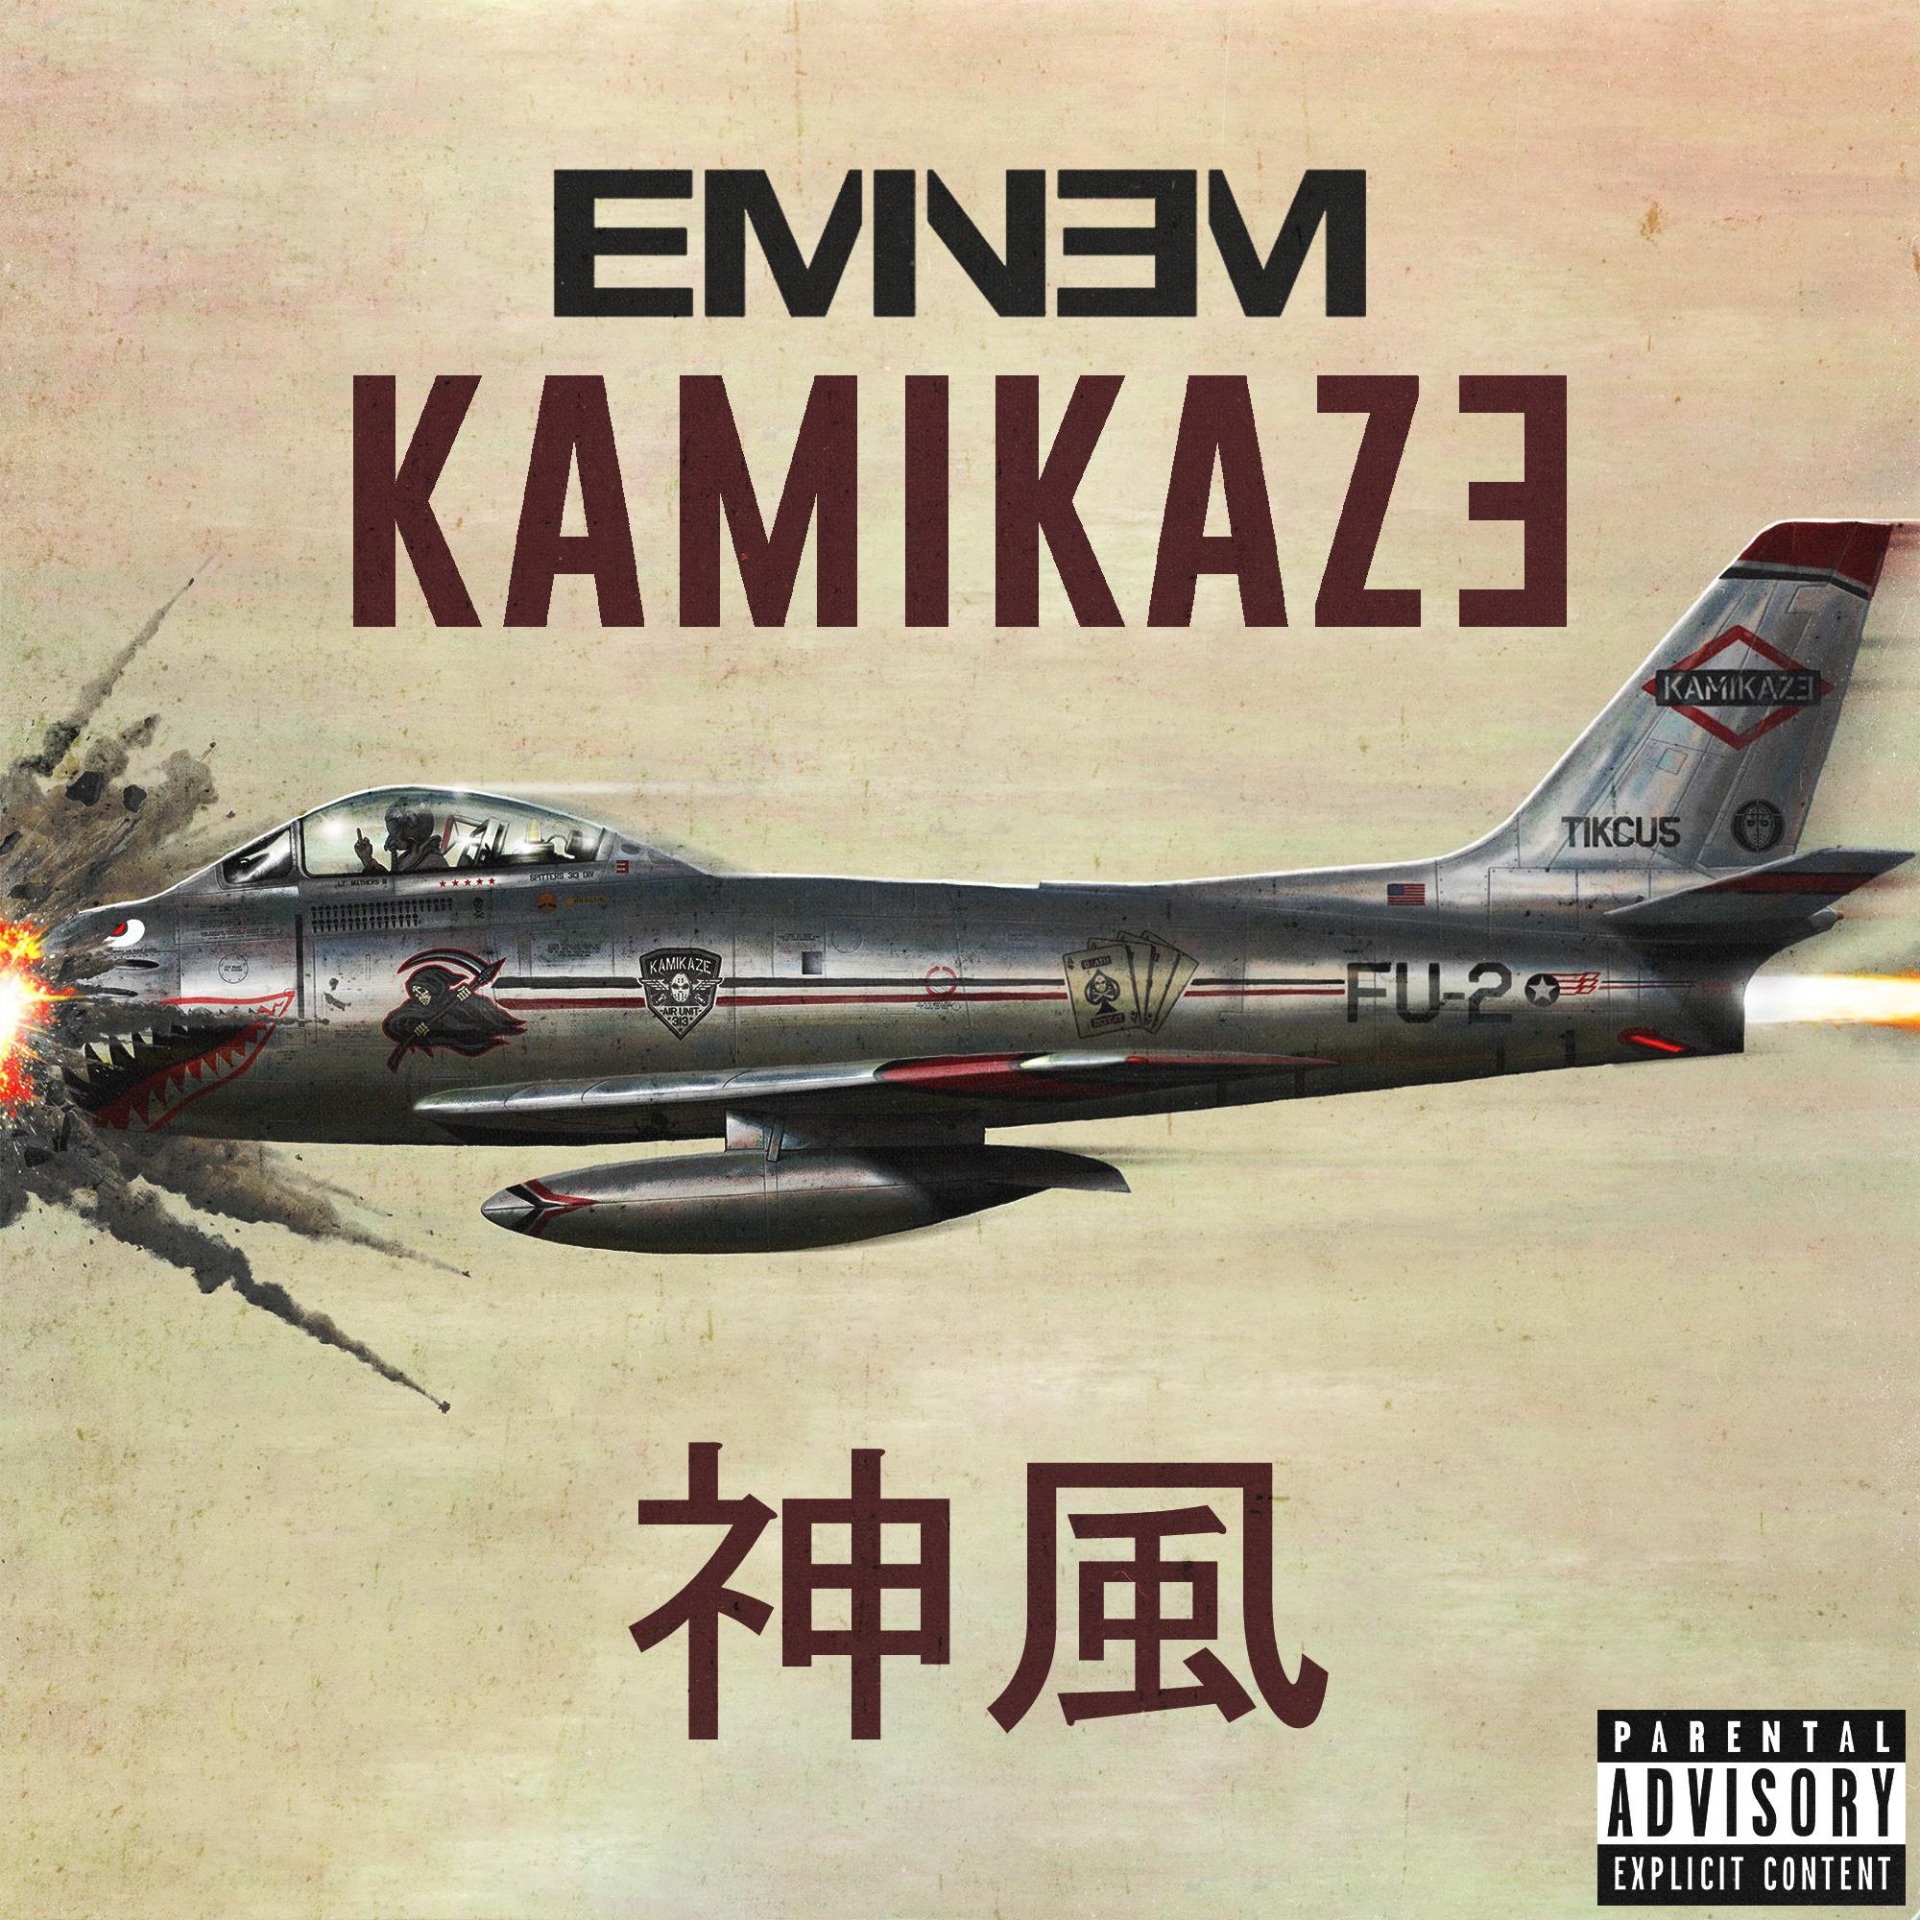 Eminem Kamikaze full Blank Meme Template